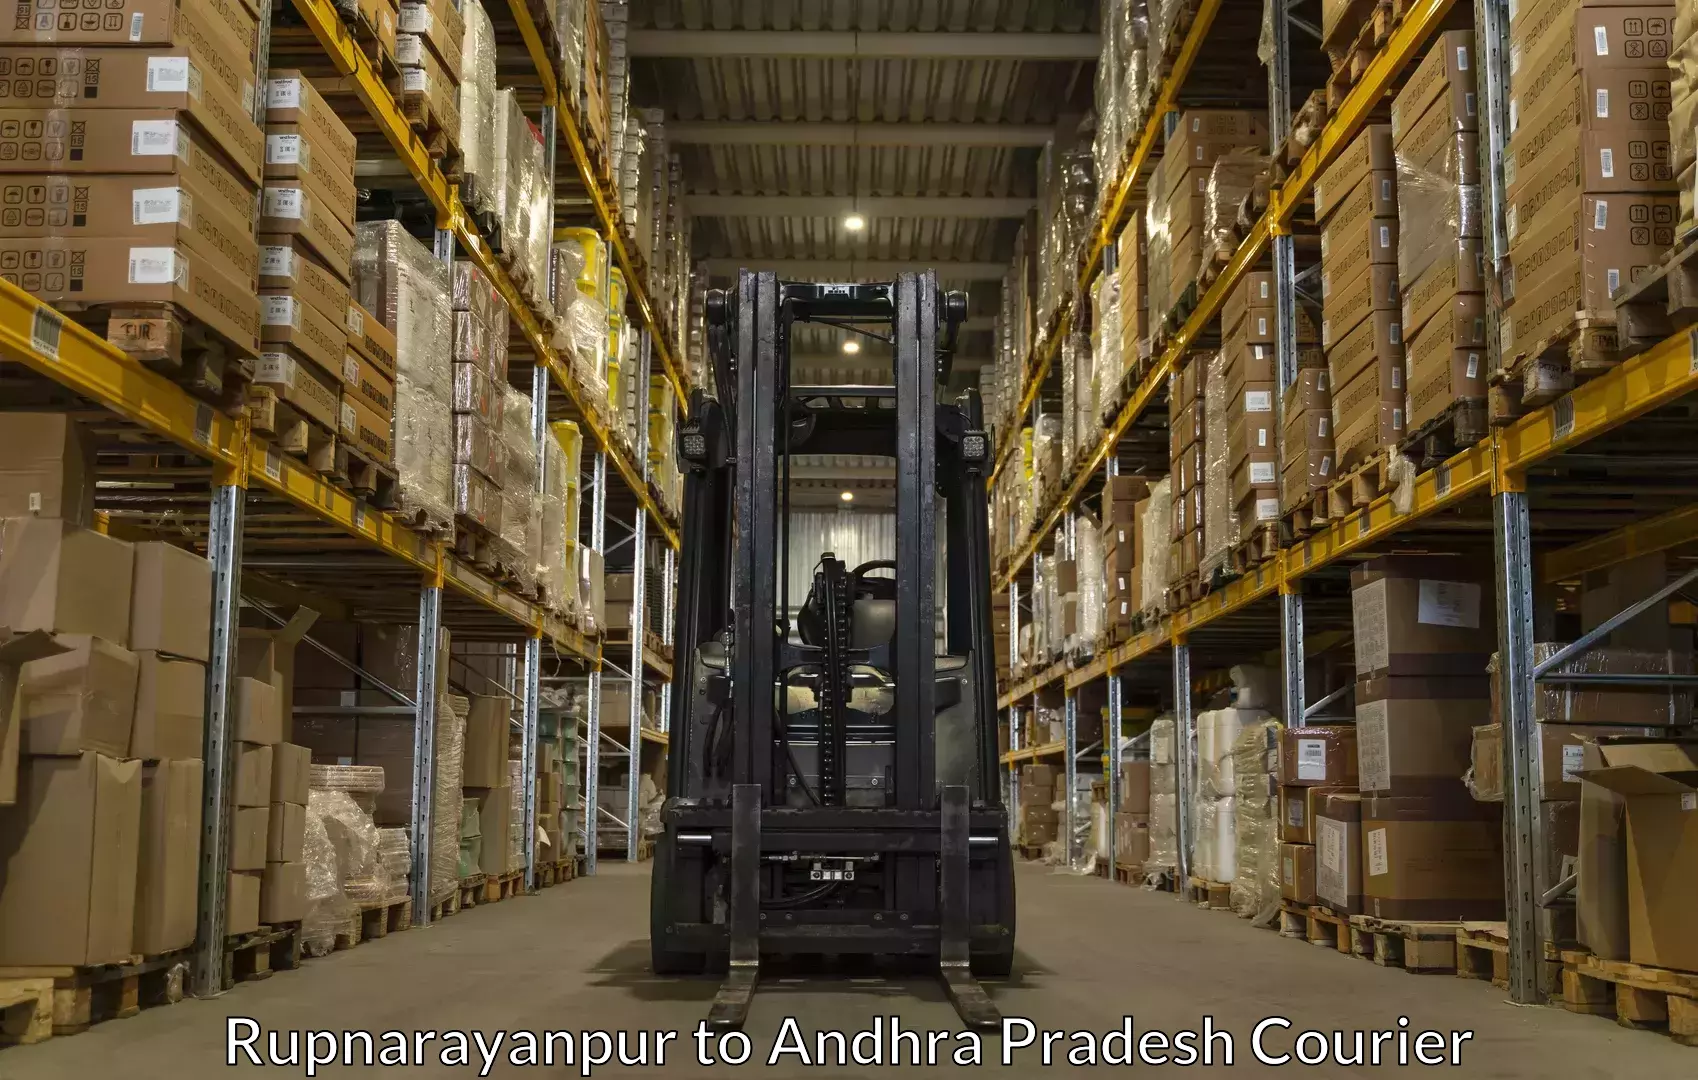 Baggage shipping service Rupnarayanpur to Cuddapah